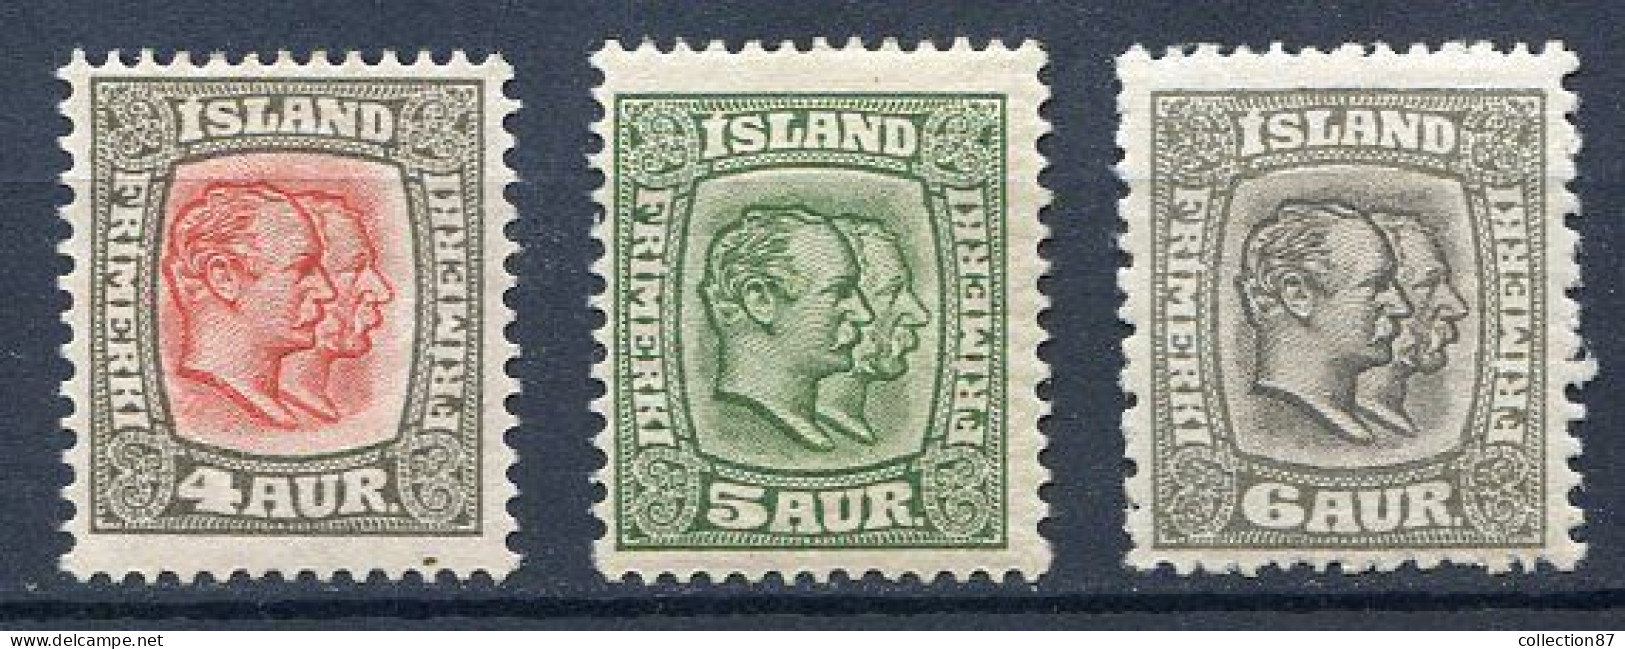 Réf 58-CL2 < ISLANDE < Yvert N° 49+50+51 * Neuf Ch. * MH - Unused Stamps